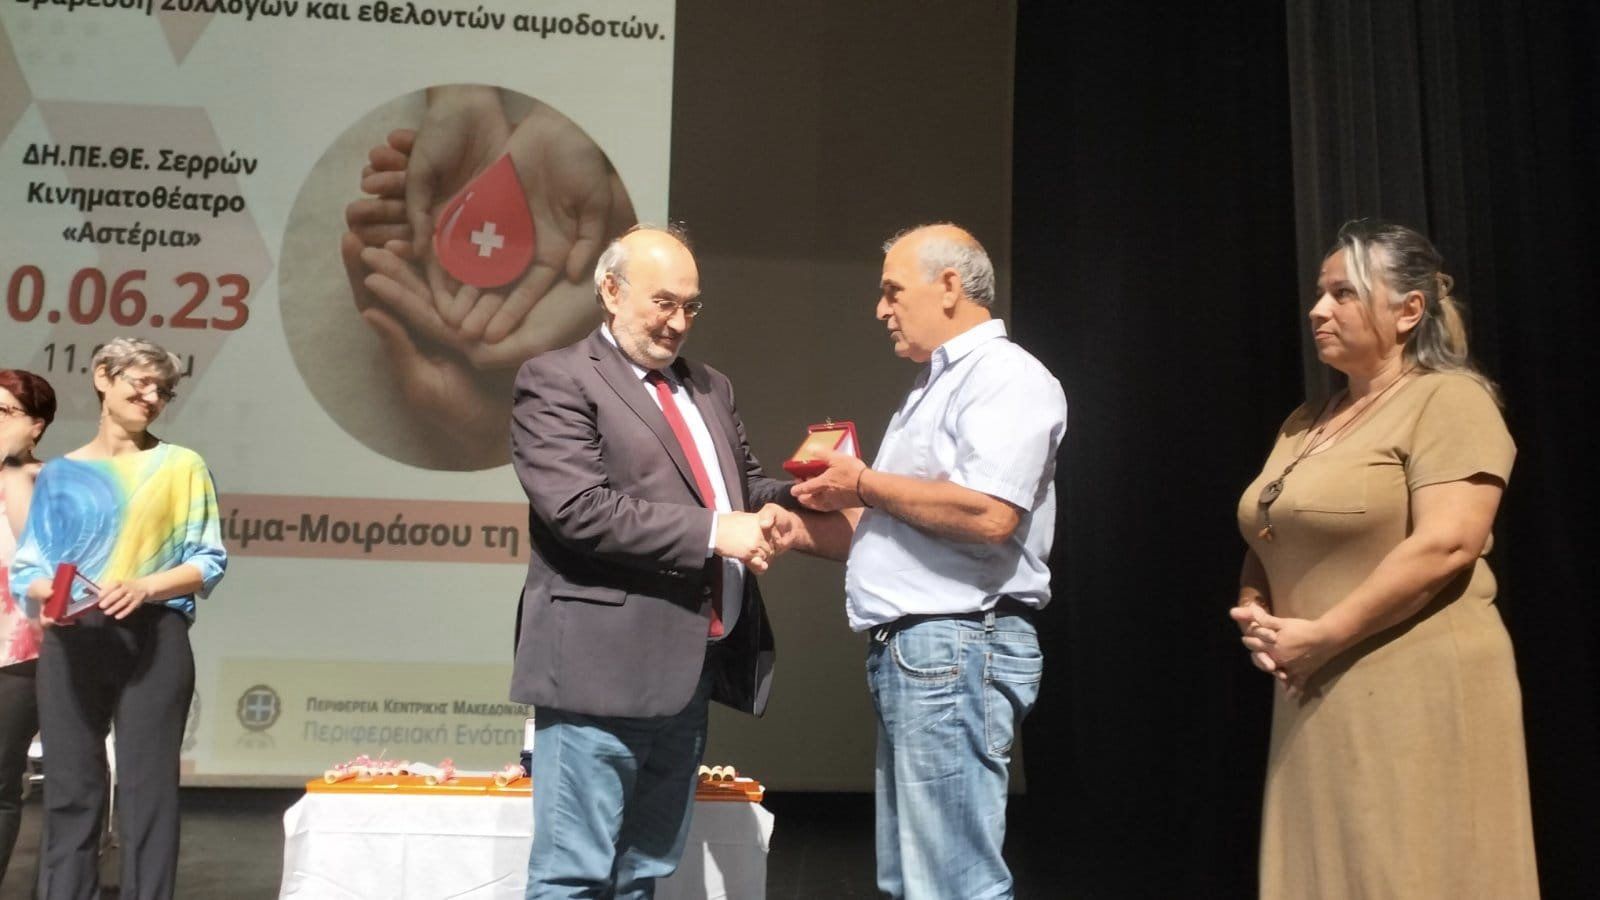 Π. Κατσίβελας: “Οι Σέρρες έχουν εξαιρετική επίδοση και προσφορά στην αιμοδοσία”